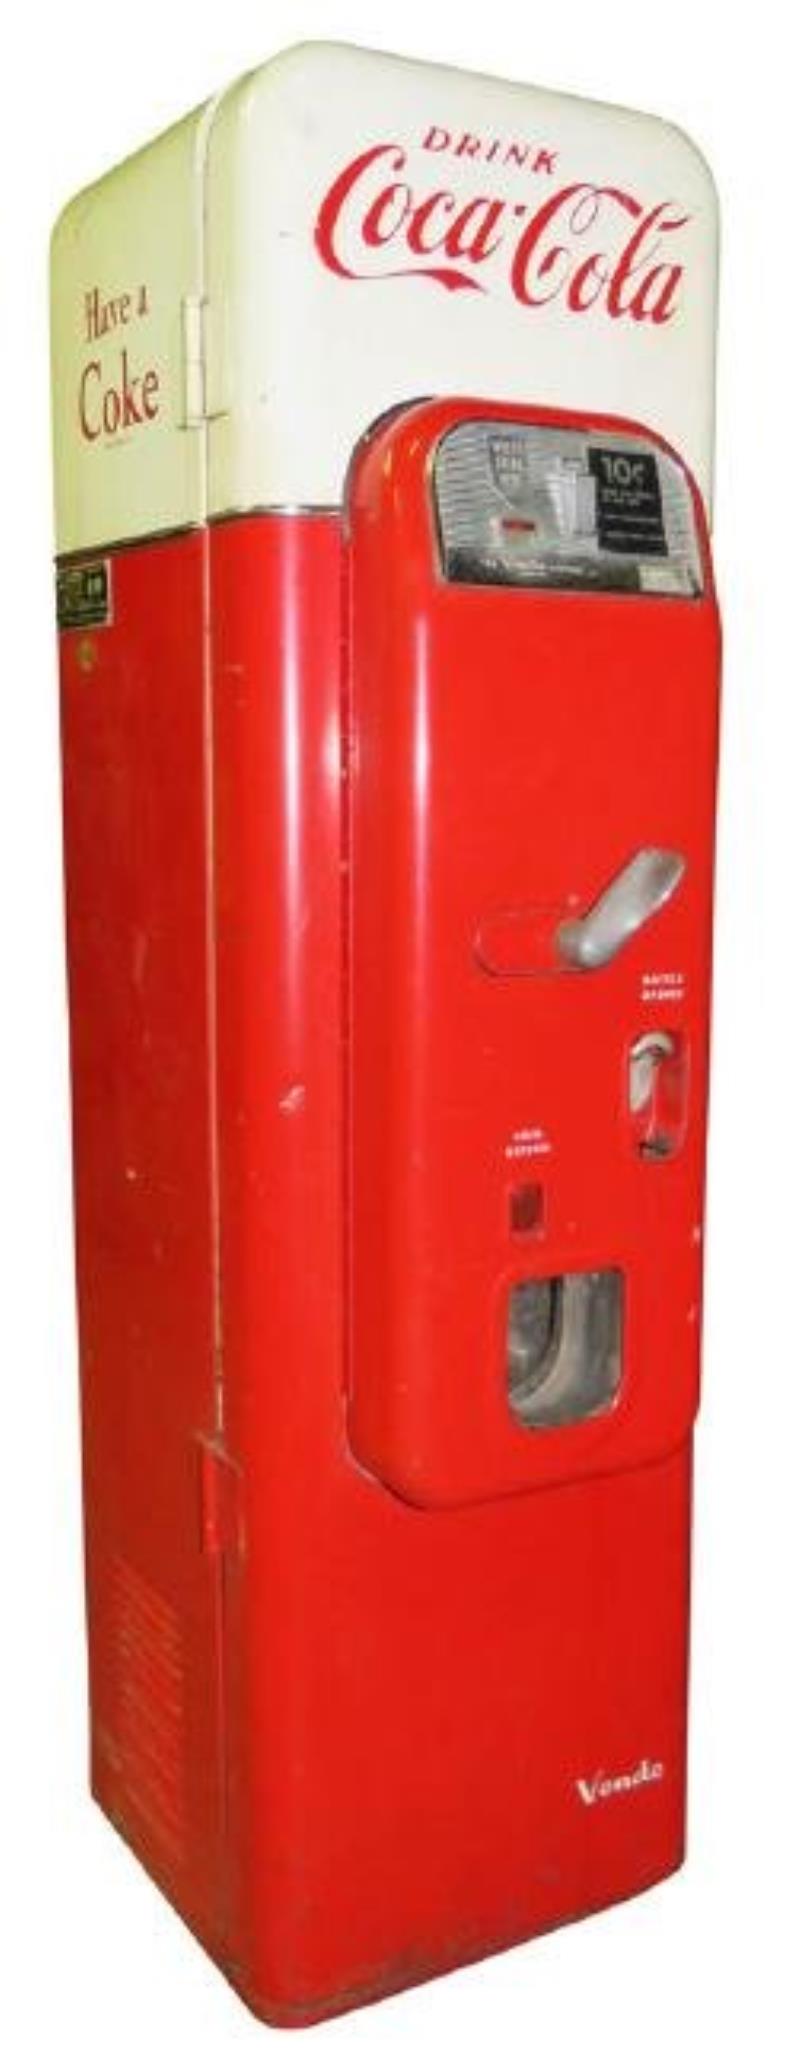 Coca Cola 10 Cent Vendo Machine